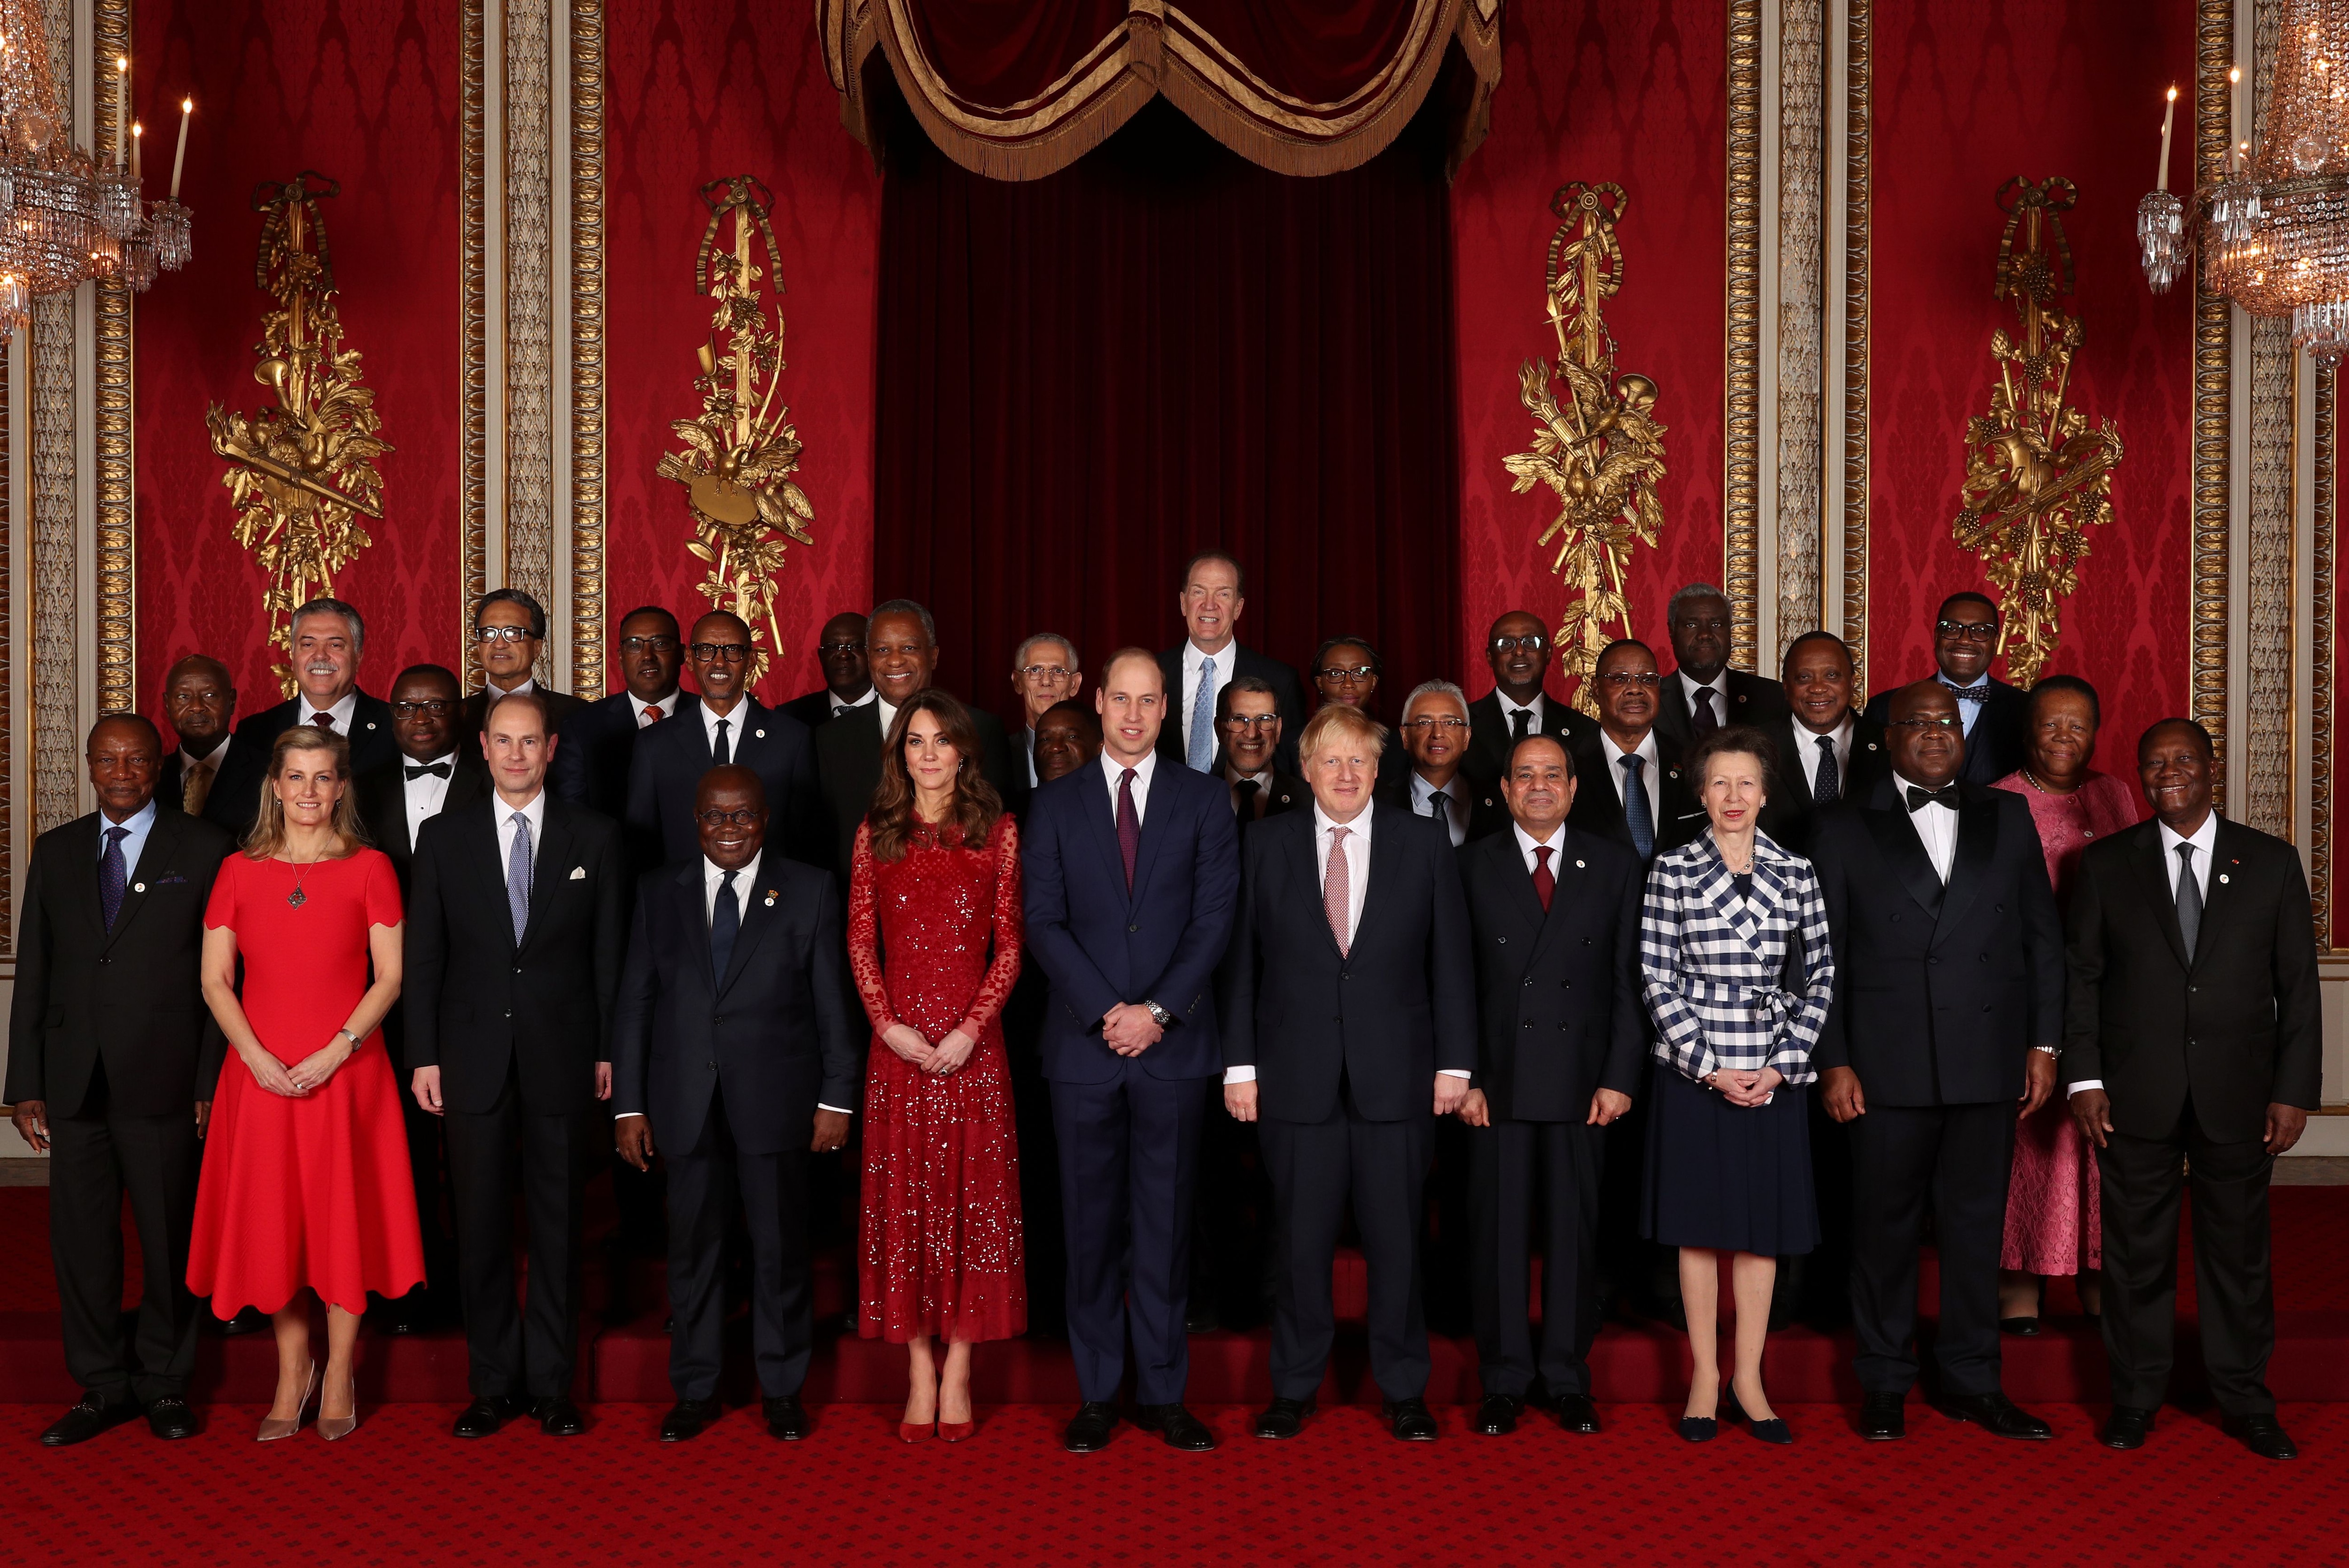 El príncipe William y Kate Middleton estuvieron al frente de la recepción en el Palacio de Buckingham en el marco de la cumbre de inversión Reino Unido - África (Yui Mok via REUTERS)